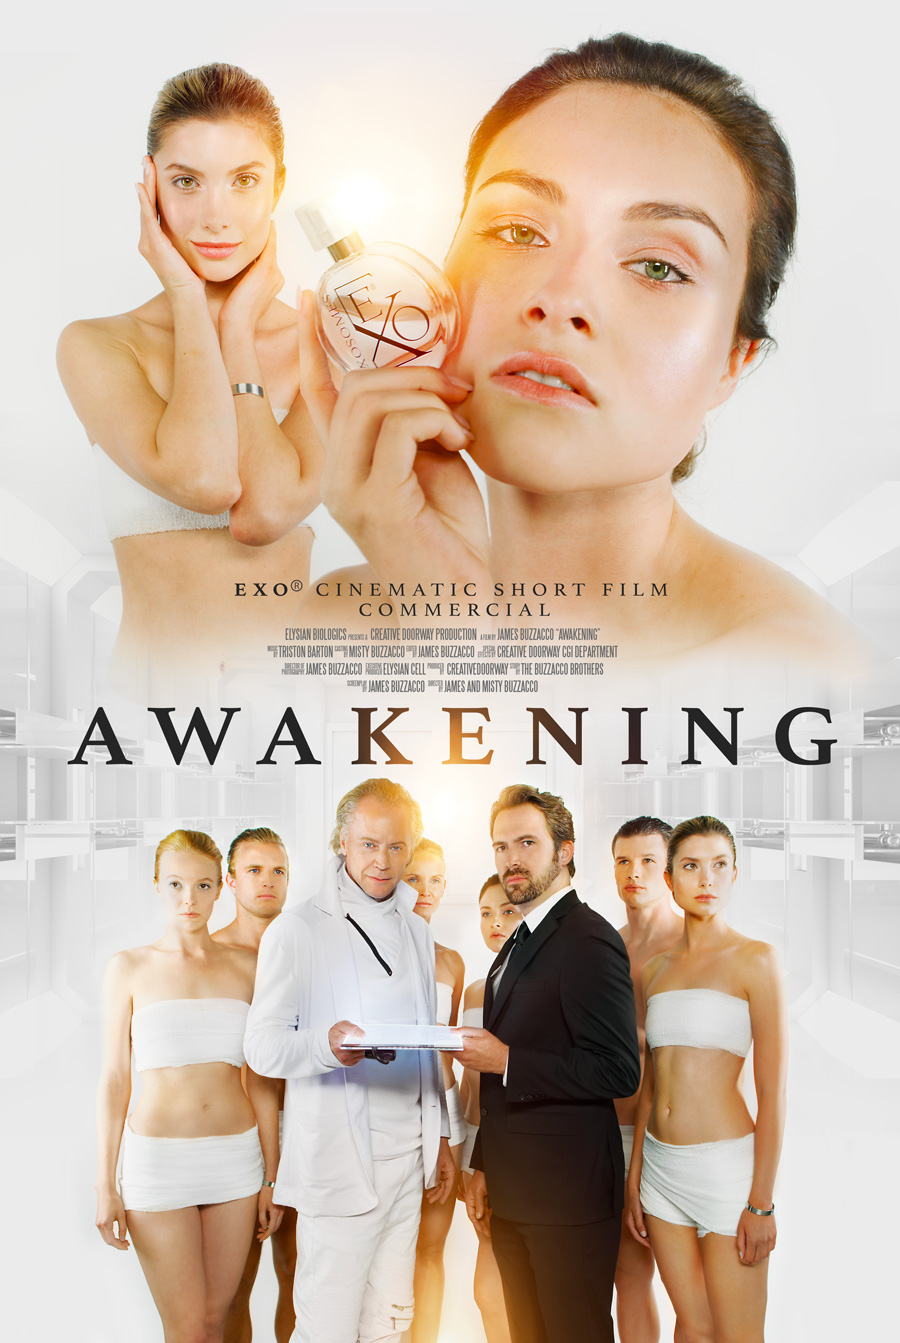 https://creativedoorway.com/wp-content/uploads/2023/02/movie_poster_awakening.jpg